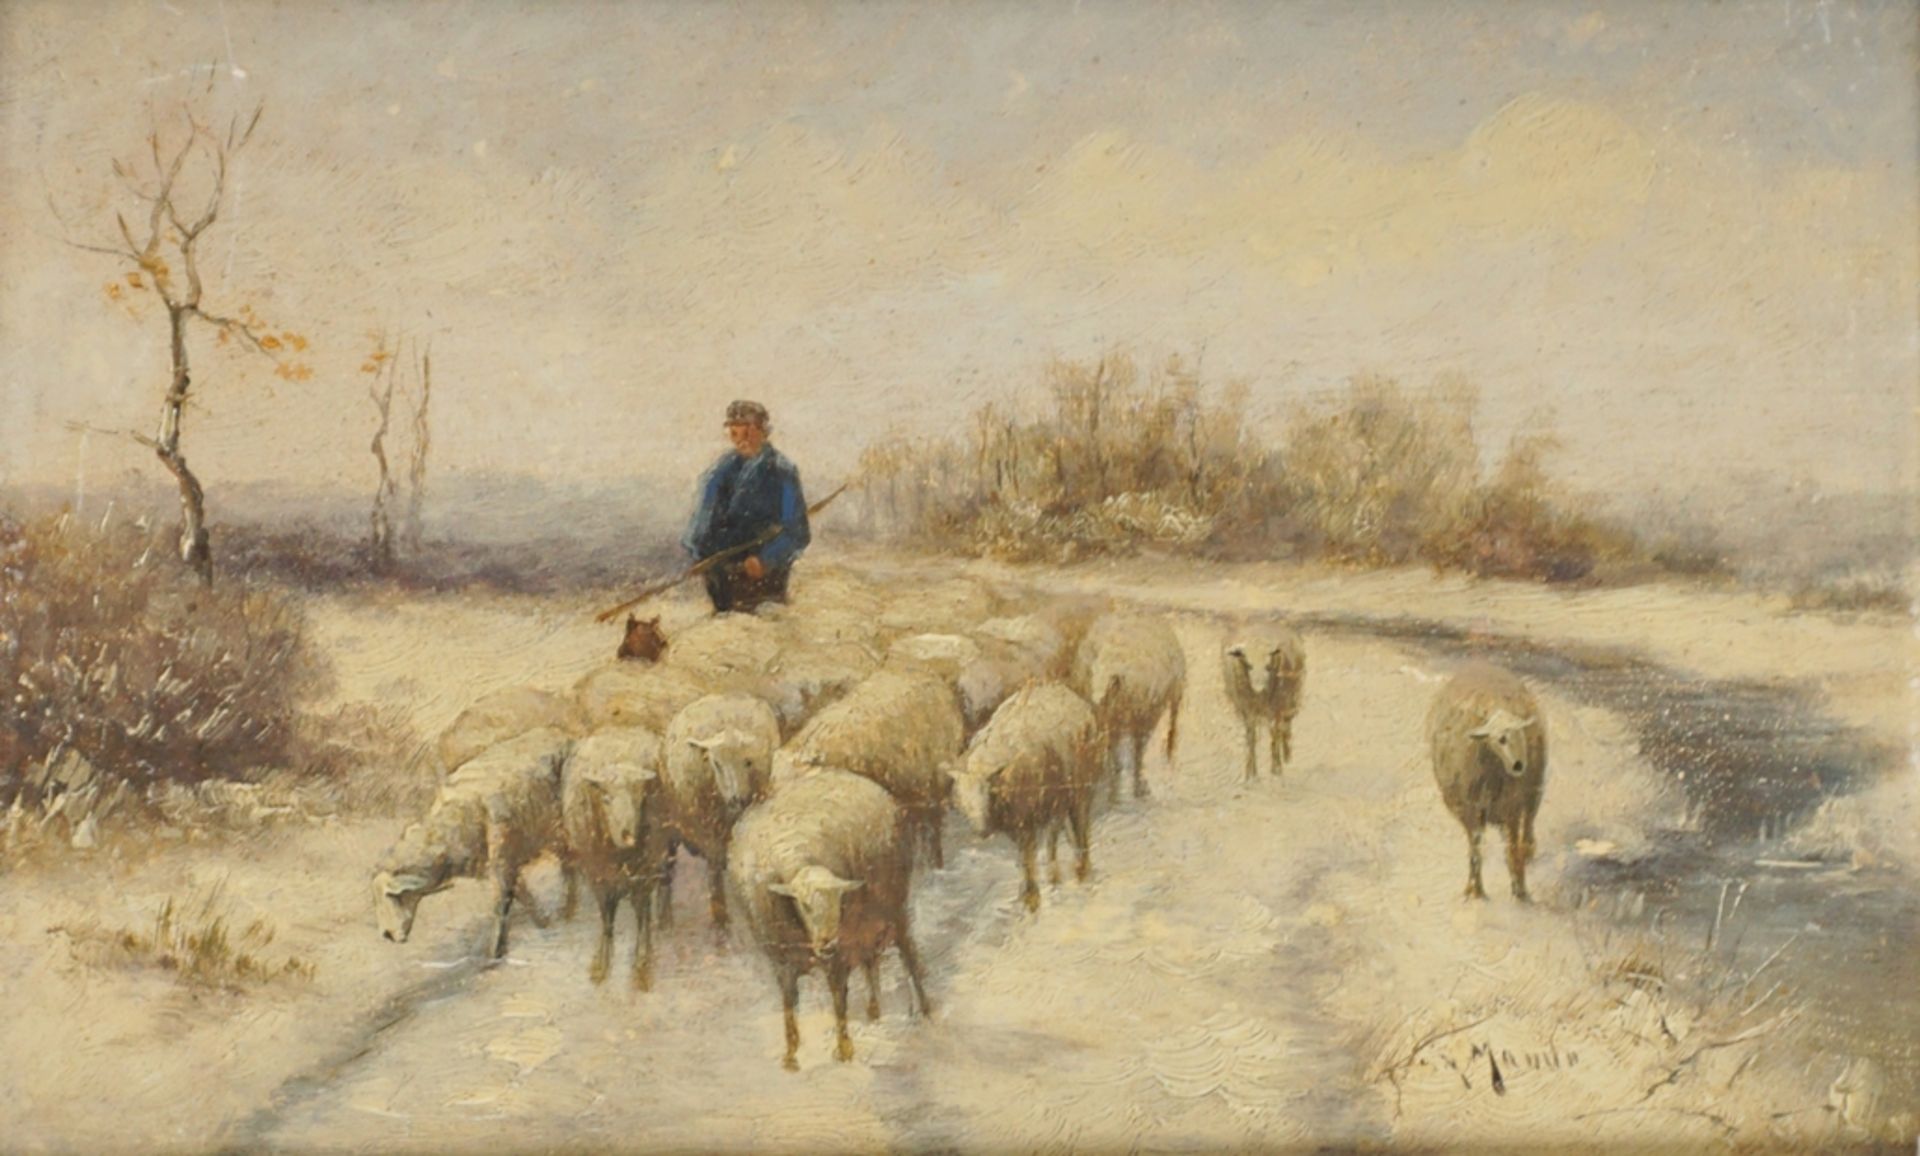 nach Anton Mauve (*1838 in Zaandam - 1888 in Arnhem) "Schäfer mit Schafherde im Winter"